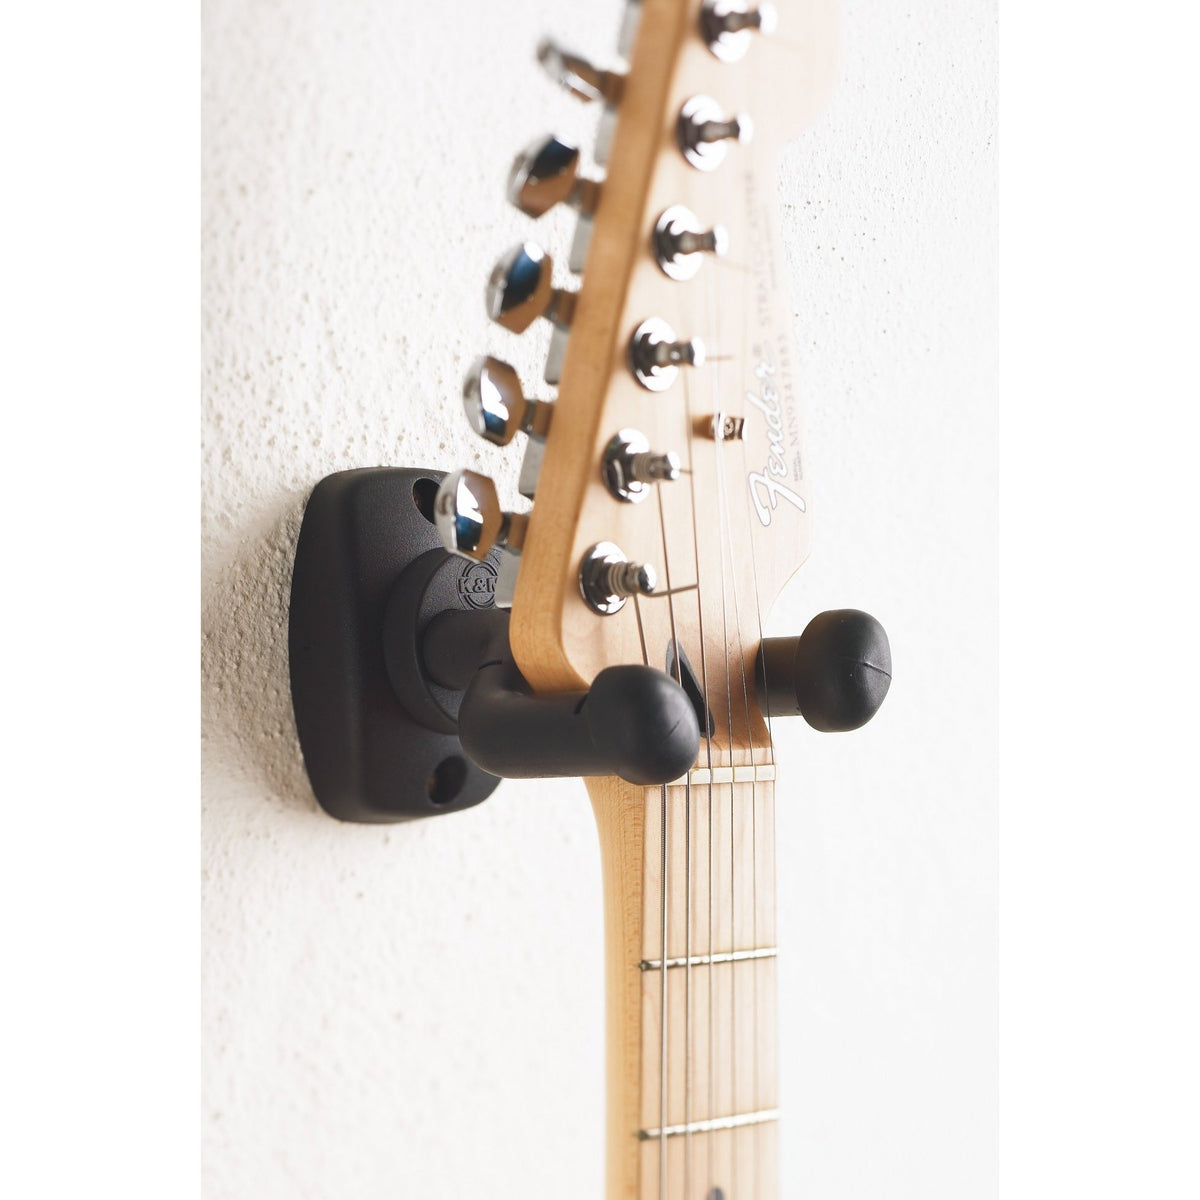 KÃ¶nig &amp; Meyer - 16250 Guitar Wall Mount-Instrument Stand-KÃ¶nig &amp; Meyer-Music Elements